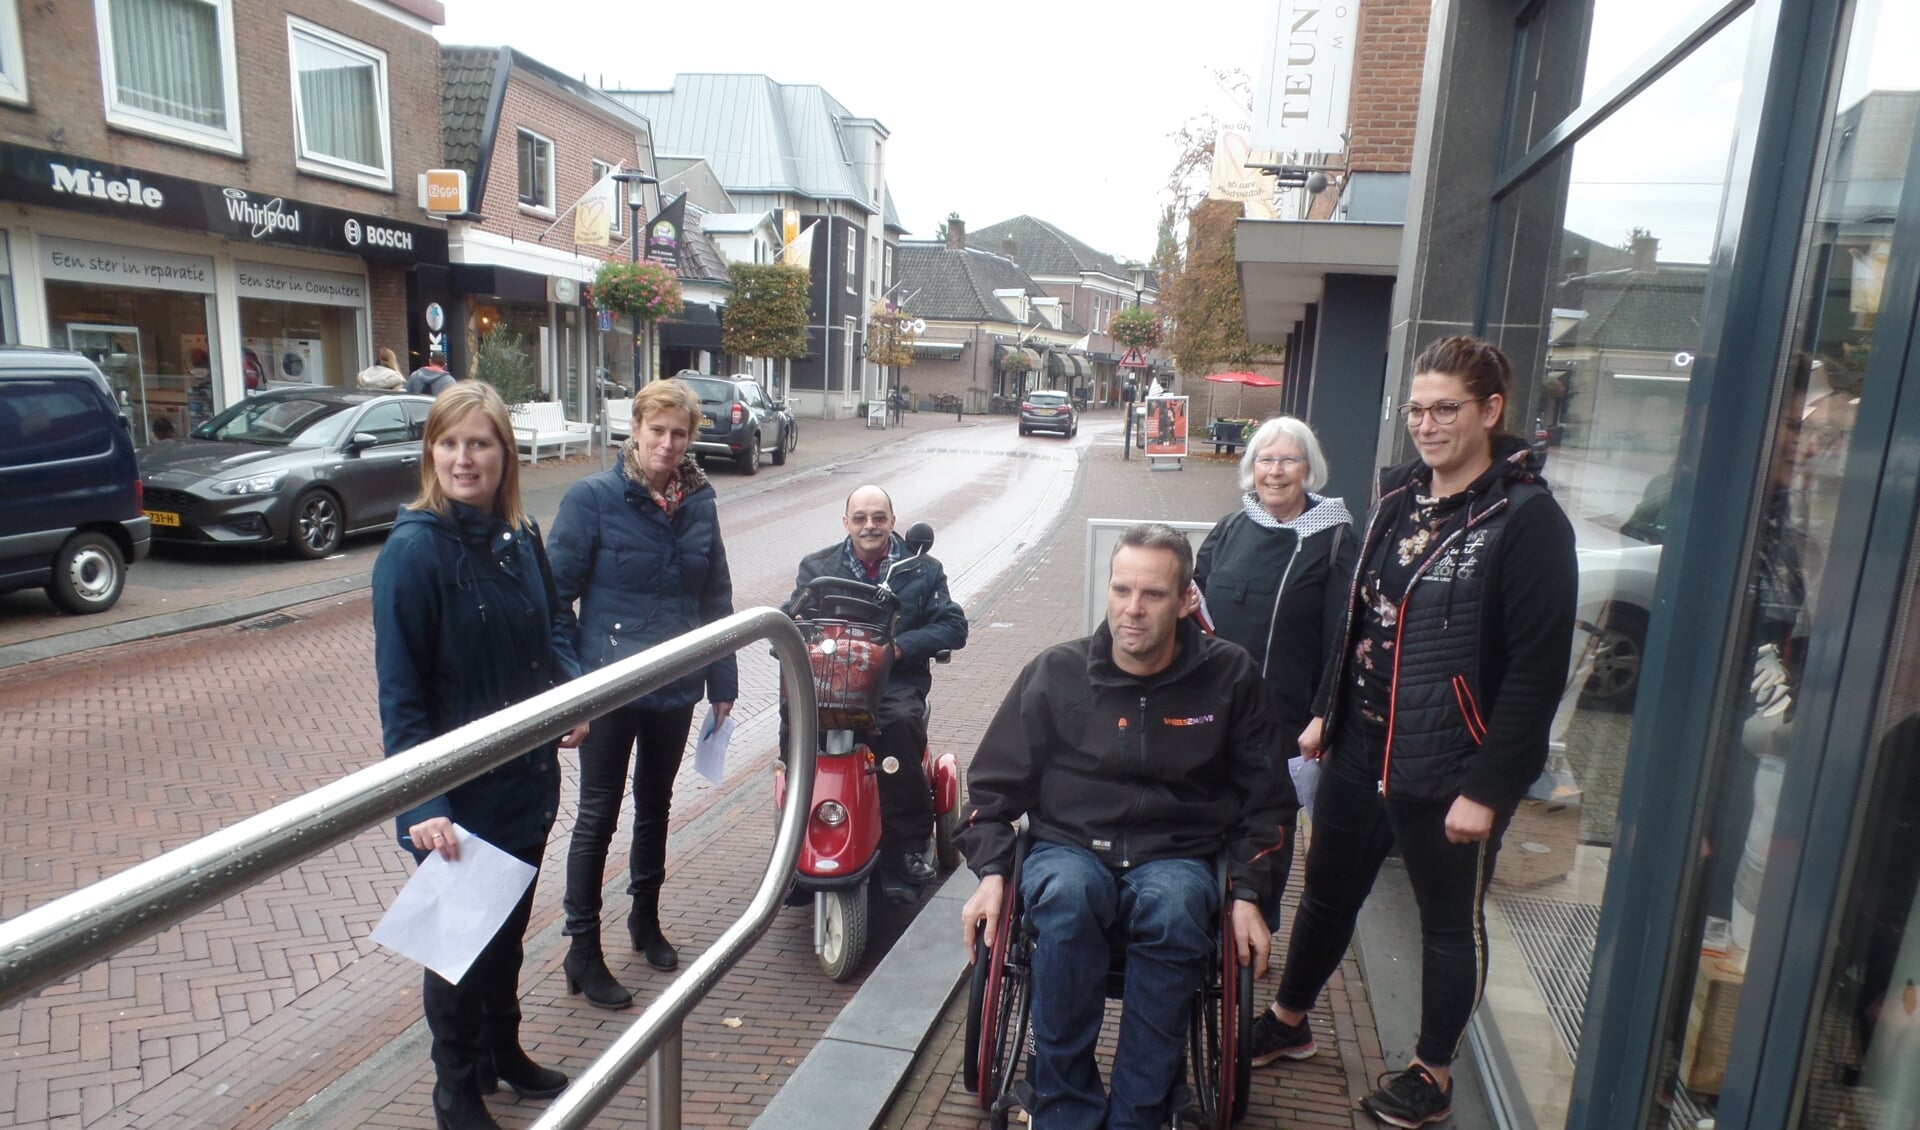 Rudi van de Esschert (rolstoel) en Wil Paulis (scootmobiel) testen onder toeziend oog van onder meer Marieke Heusinkveld en Alianne Koning de toegankelijkheid van de ondernemingen. Foto: Jan Hendriksen